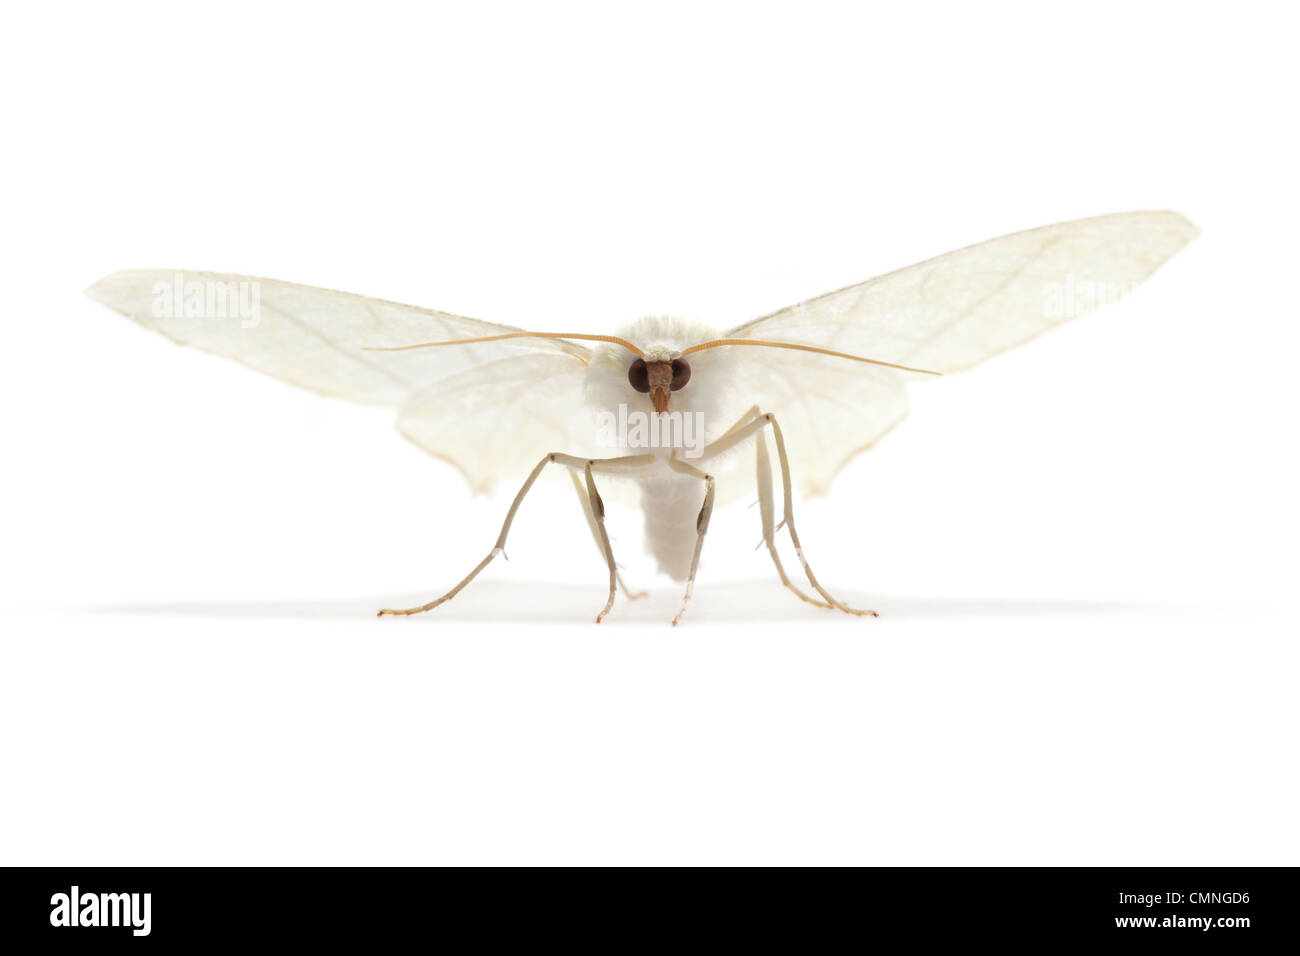 Ourapteryx sambucaria (c) photographié sur un fond blanc. Le Derbyshire, Royaume-Uni. Juillet. Banque D'Images